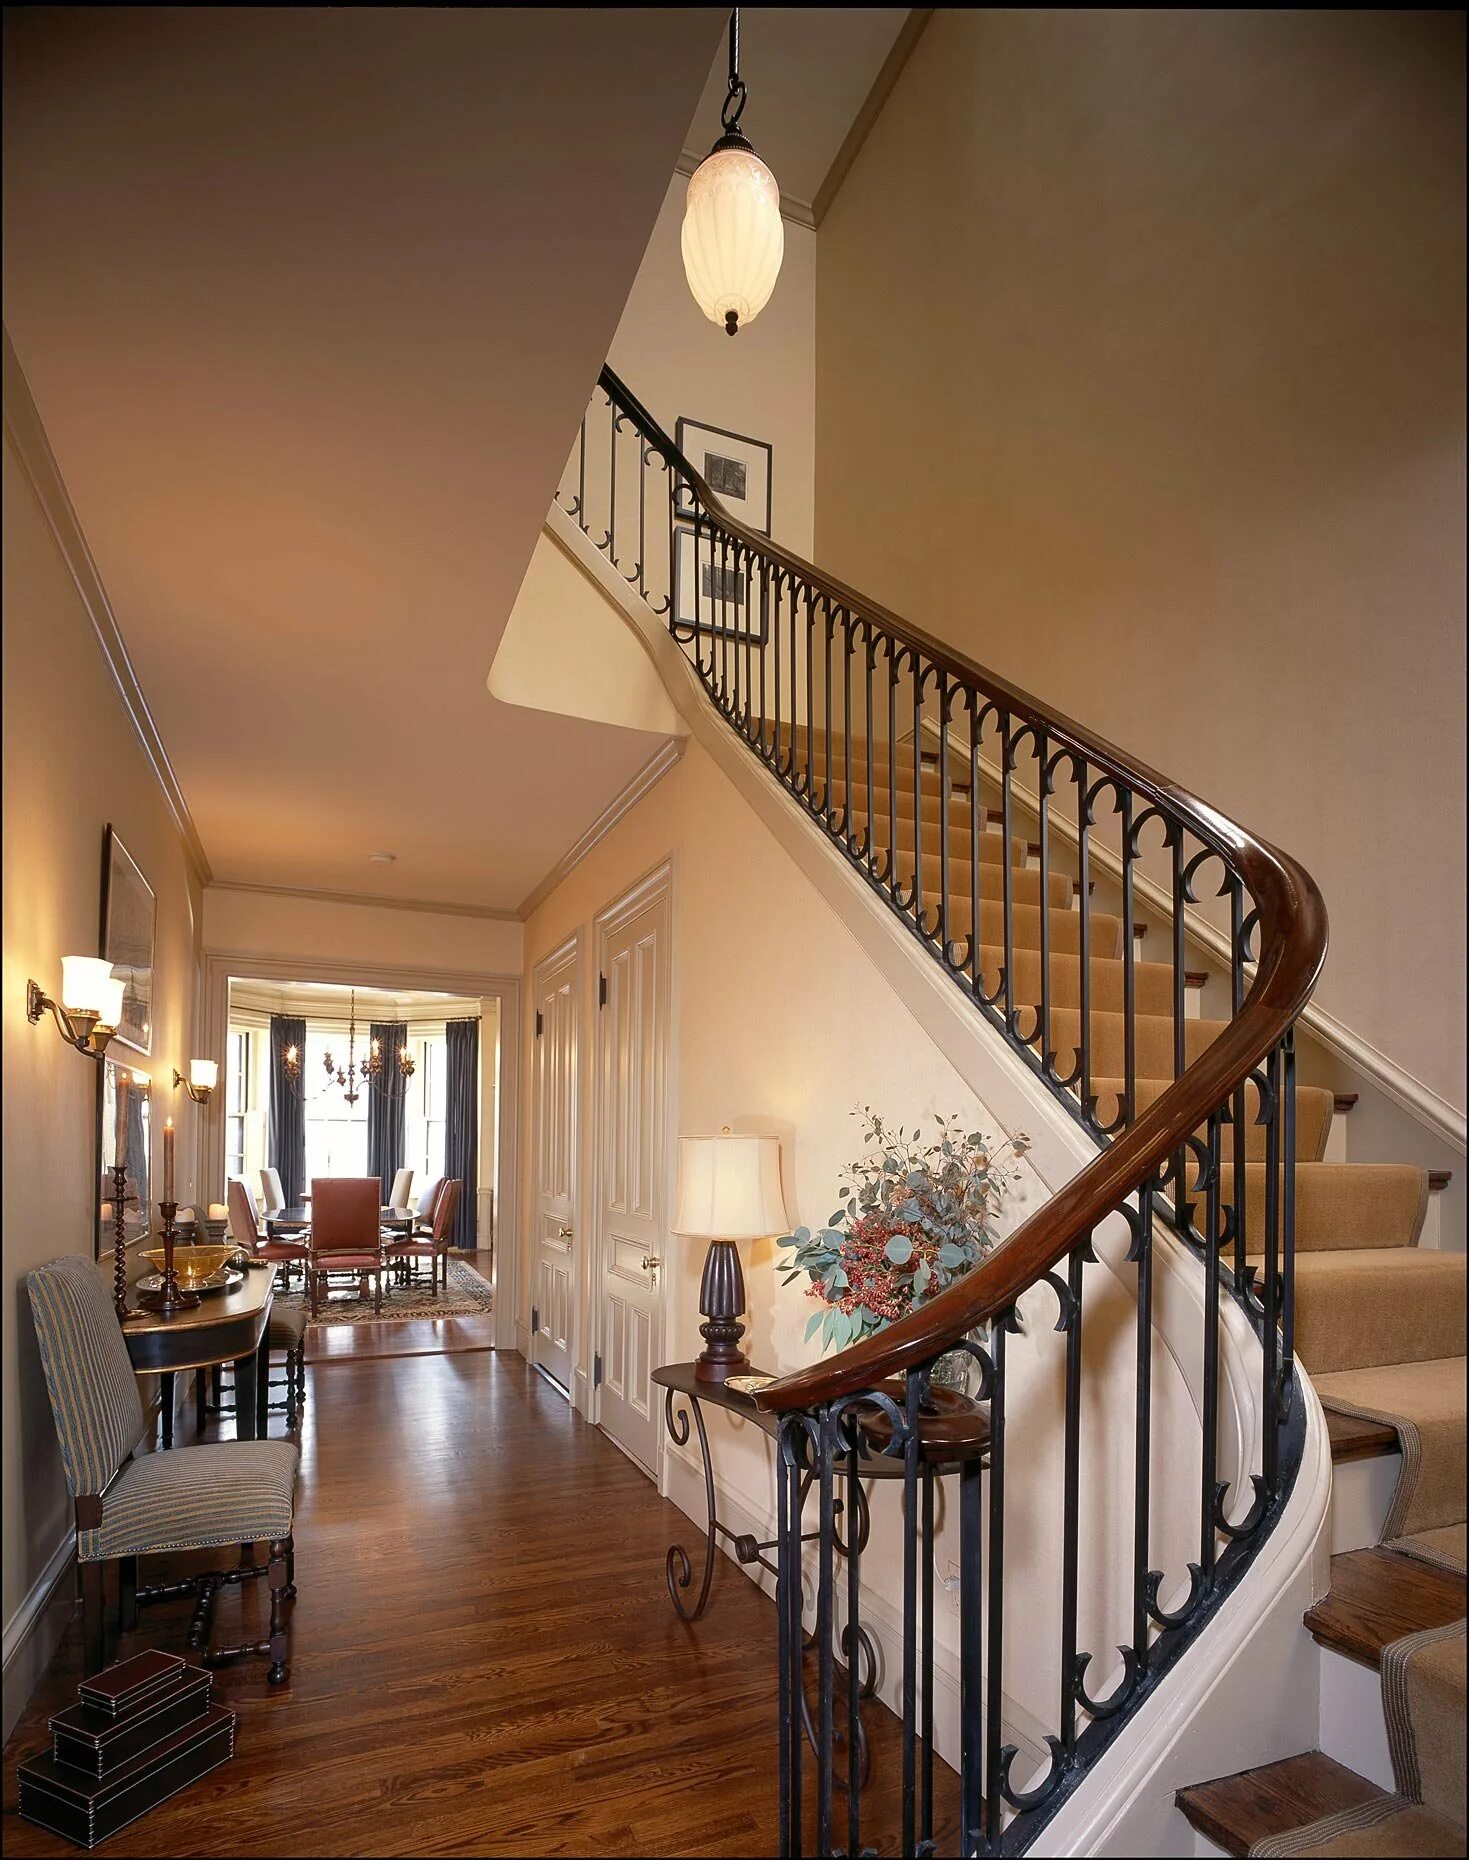 Как попасть на второй этаж. Лестница в интерьере. Красивые лестницы в доме. Лестница в двухэтажном доме. Двухэтажный дом с внутренней лестницей.